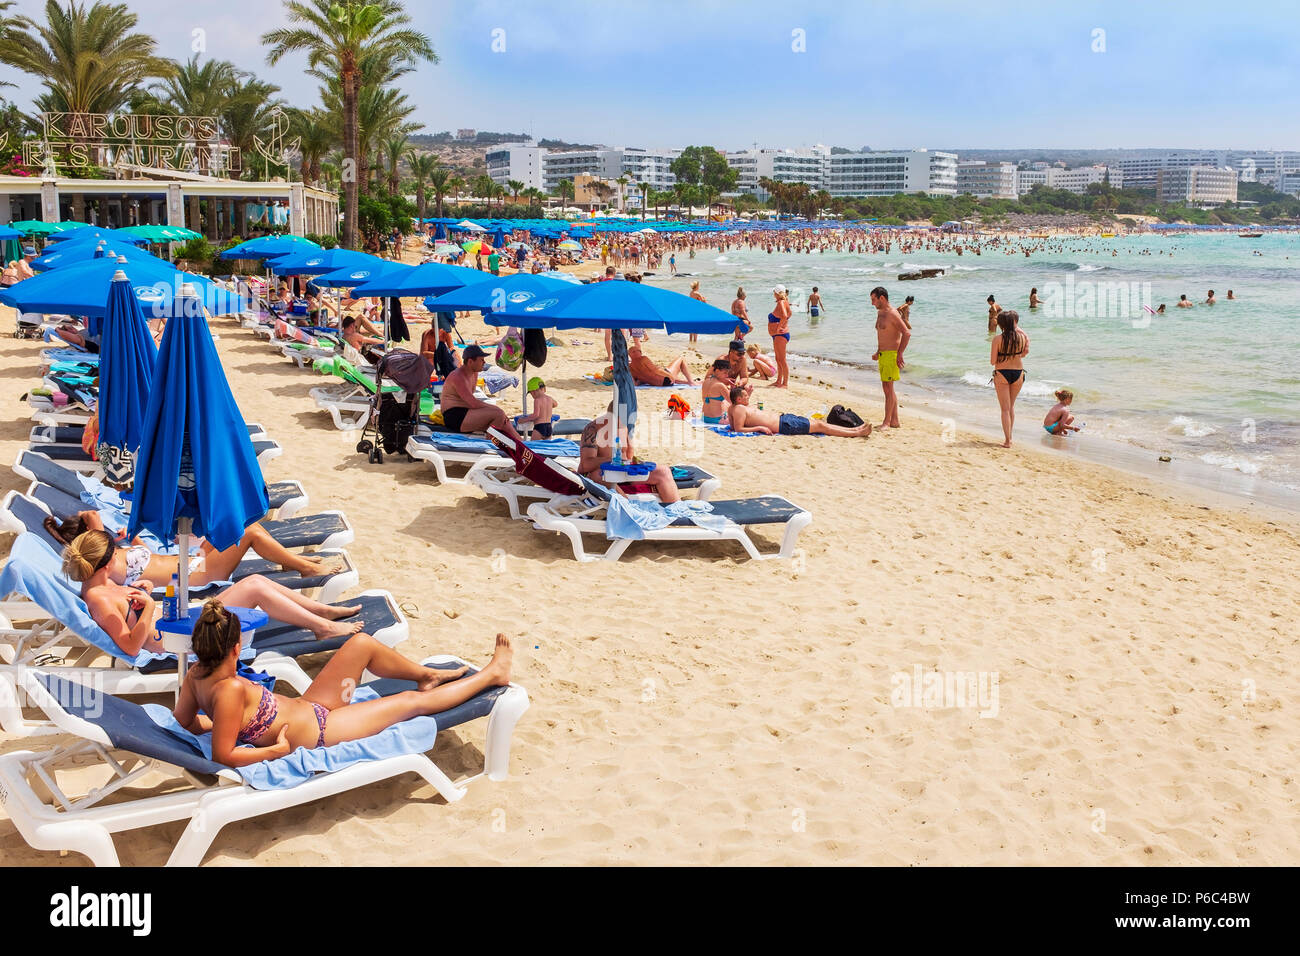 Tourists on the beach at Karousas Beach, Ayia Napa, Cyprus Stock Photo